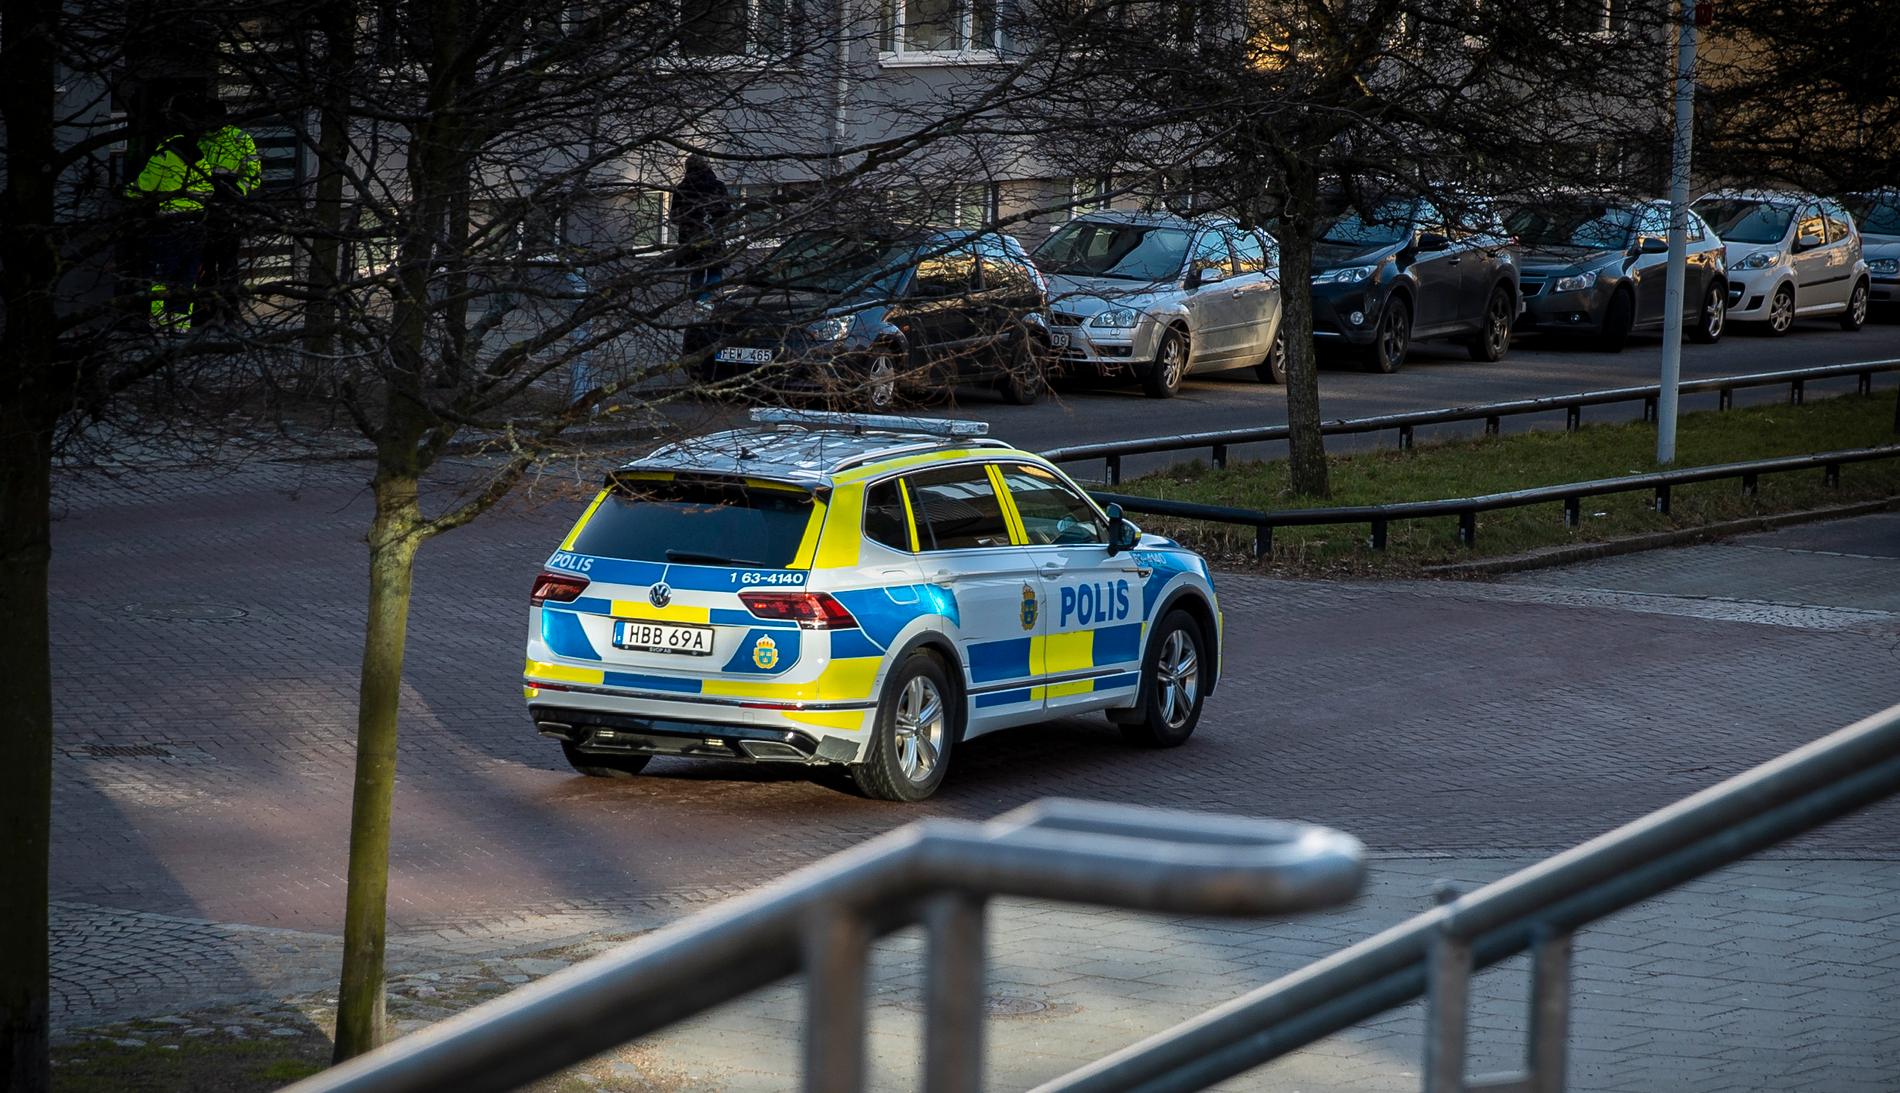 Polis på plats efter ett av alla de våldsdåd som skakat Helsingborg de senaste veckorna. 